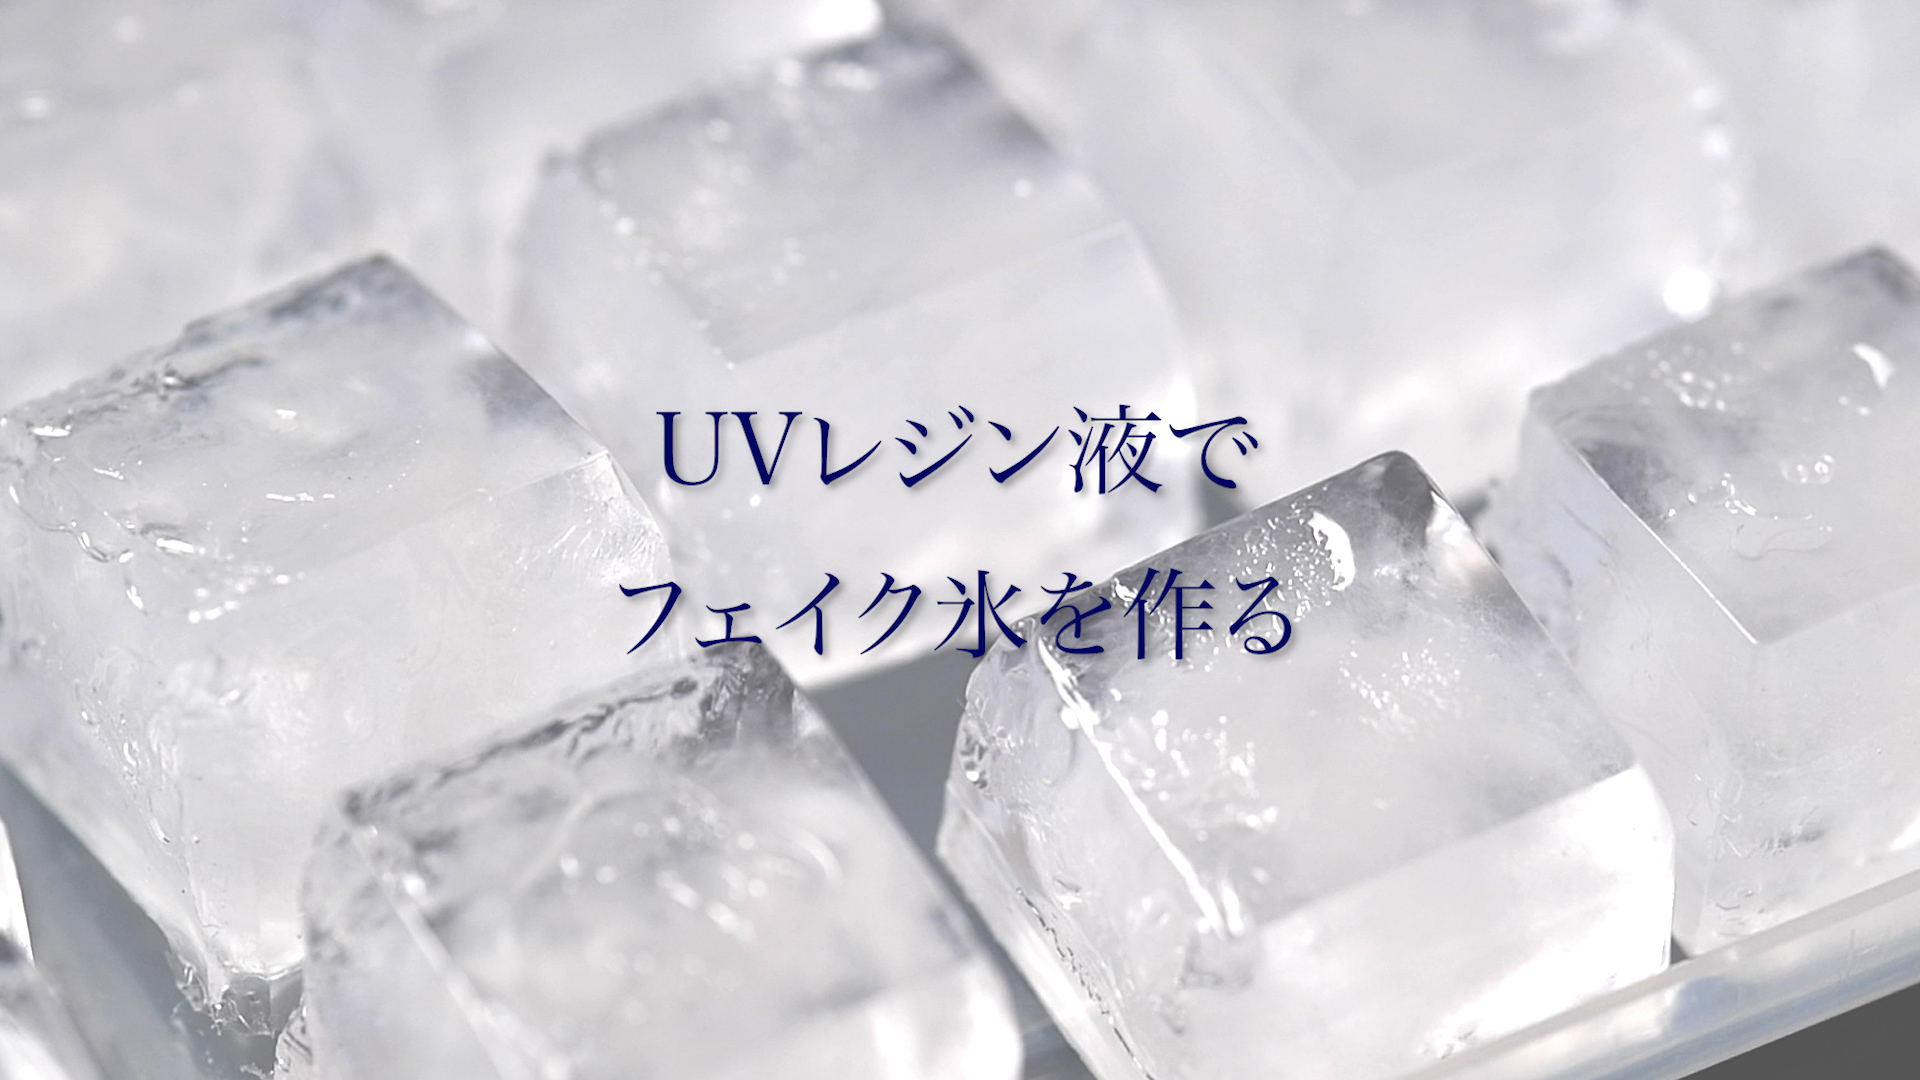 Uvレジン液でフェイク氷を作る 1カット190円 プロのカメラマンのスタジオ撮影 カメラくらぶ